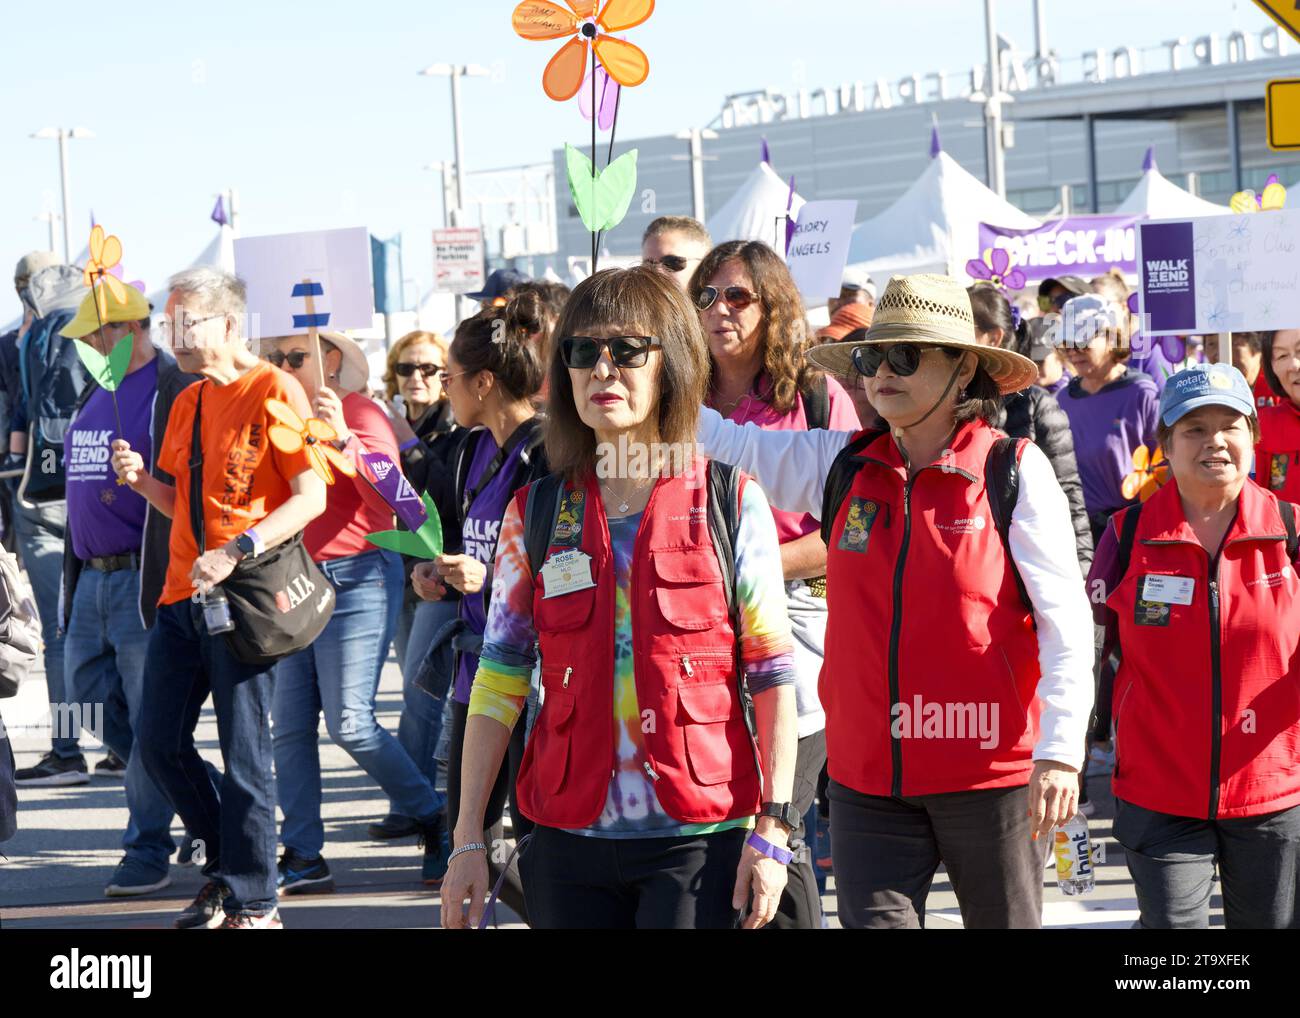 San Francisco, CA - 4 novembre 2023 : participants à la Marche annuelle pour mettre fin à la maladie d'Alzheimer, le plus grand événement mondial pour sensibiliser et financer la maladie d'Alzheimer Banque D'Images